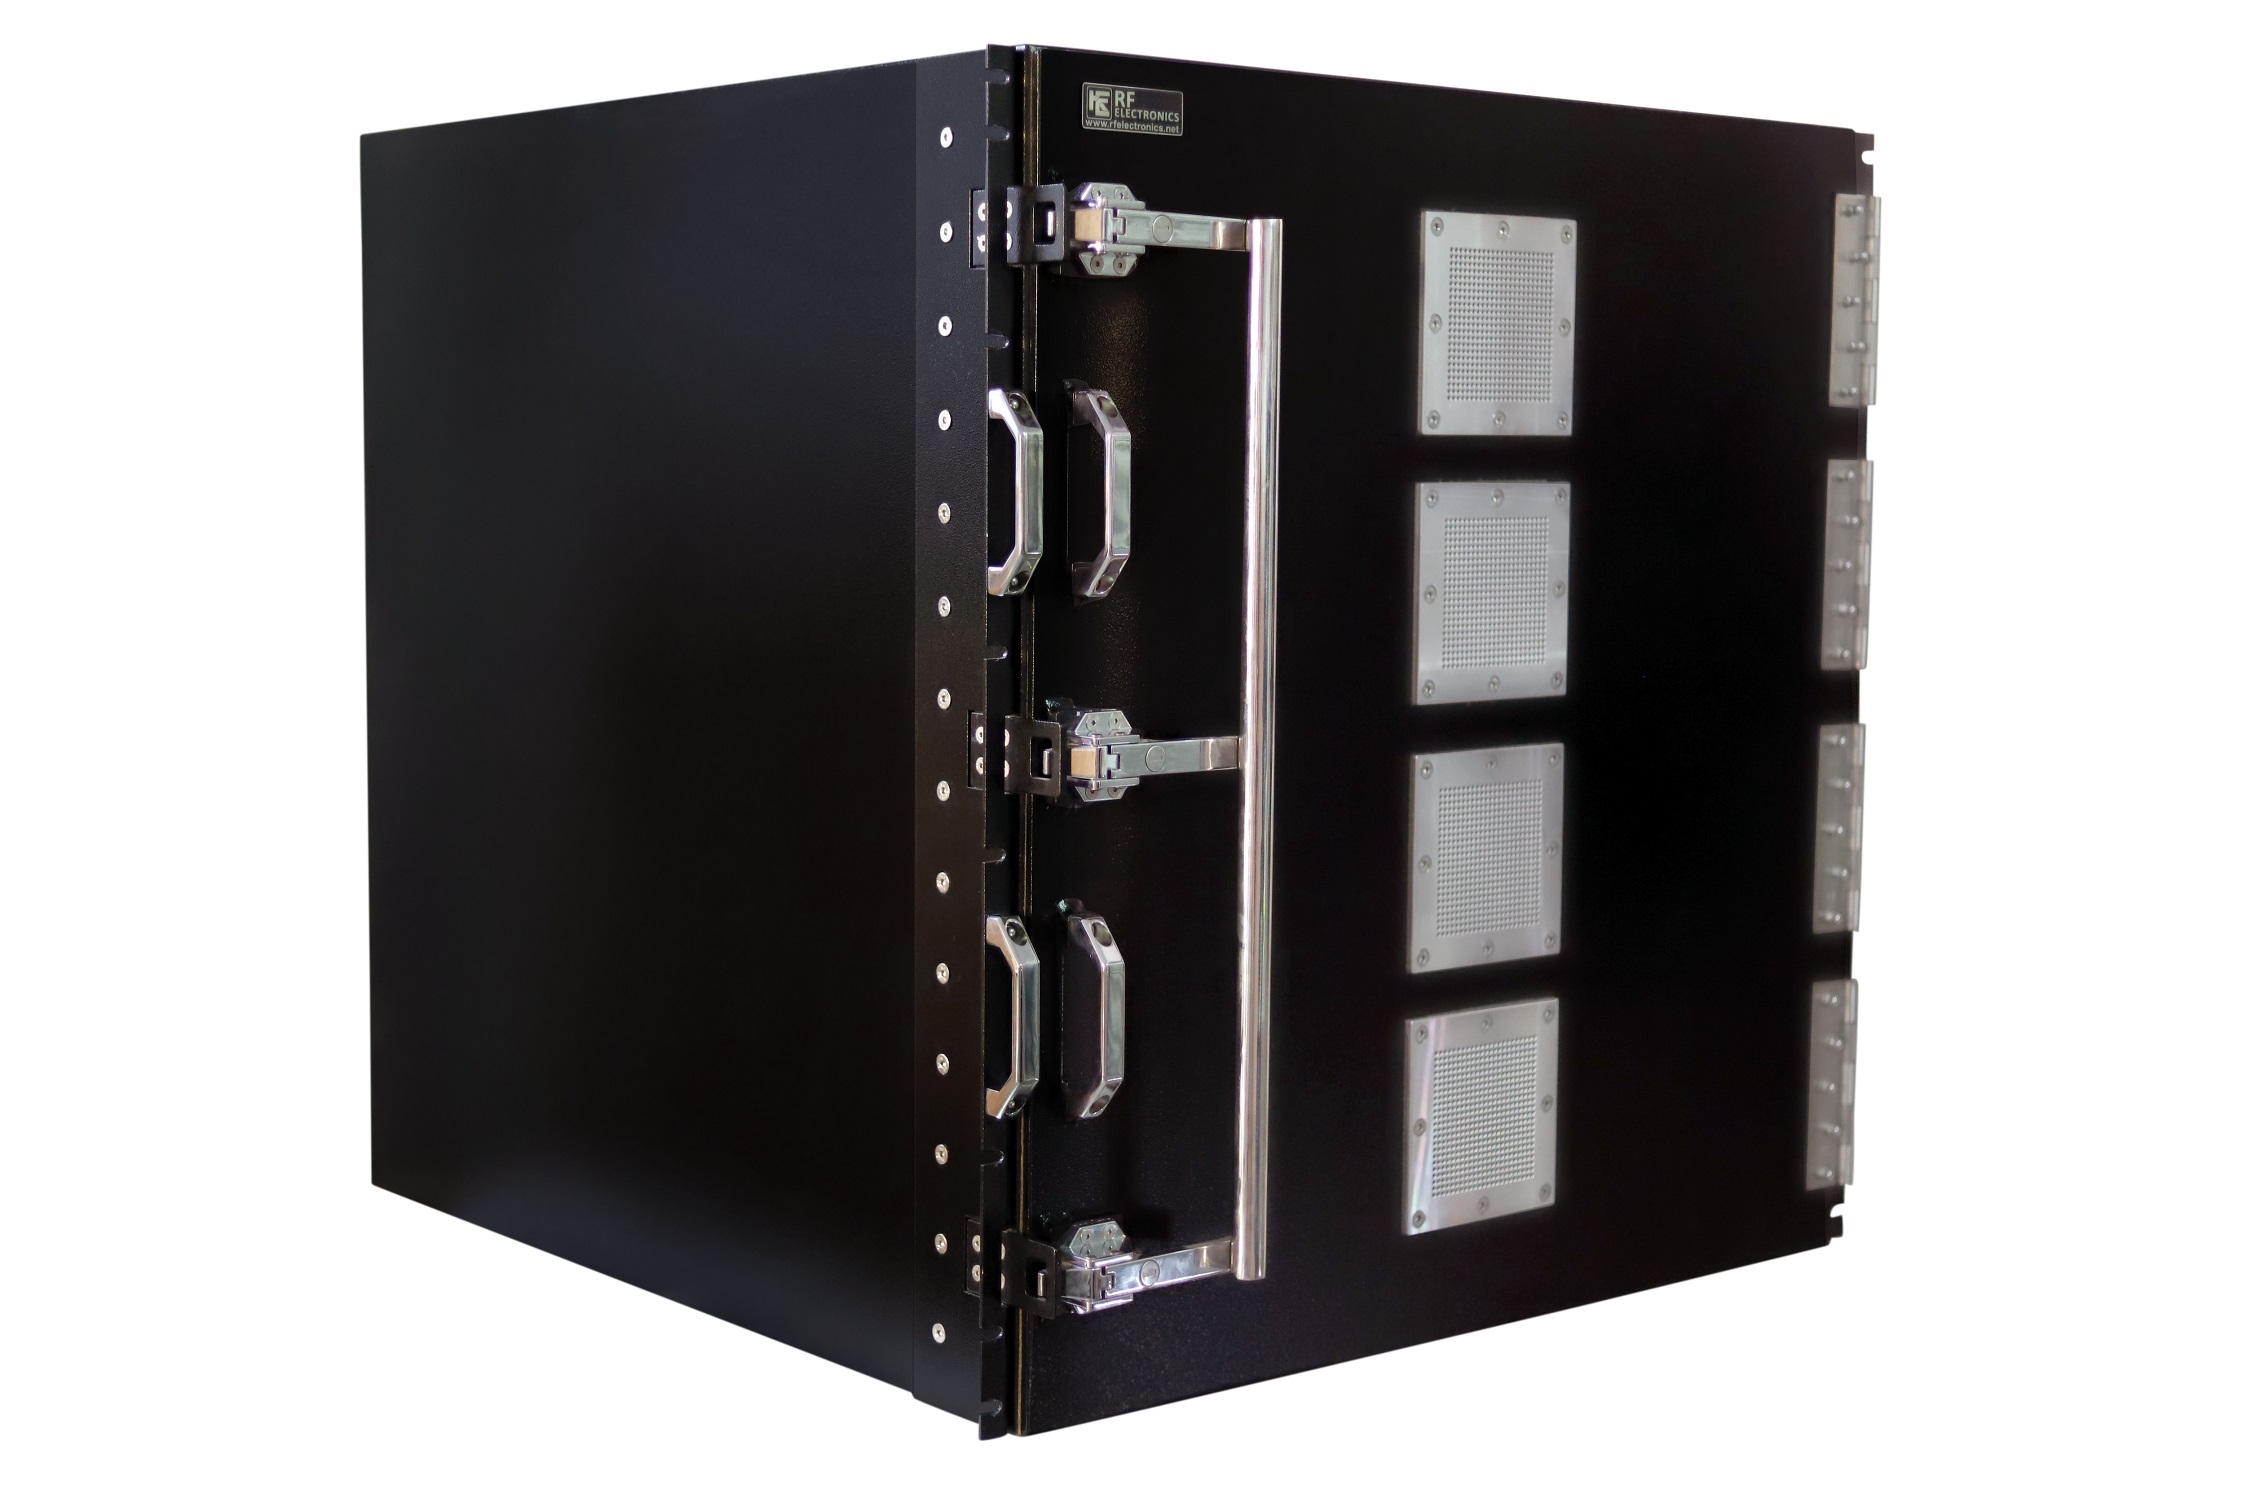 HDRF-17U3232 RF Shield Test Box